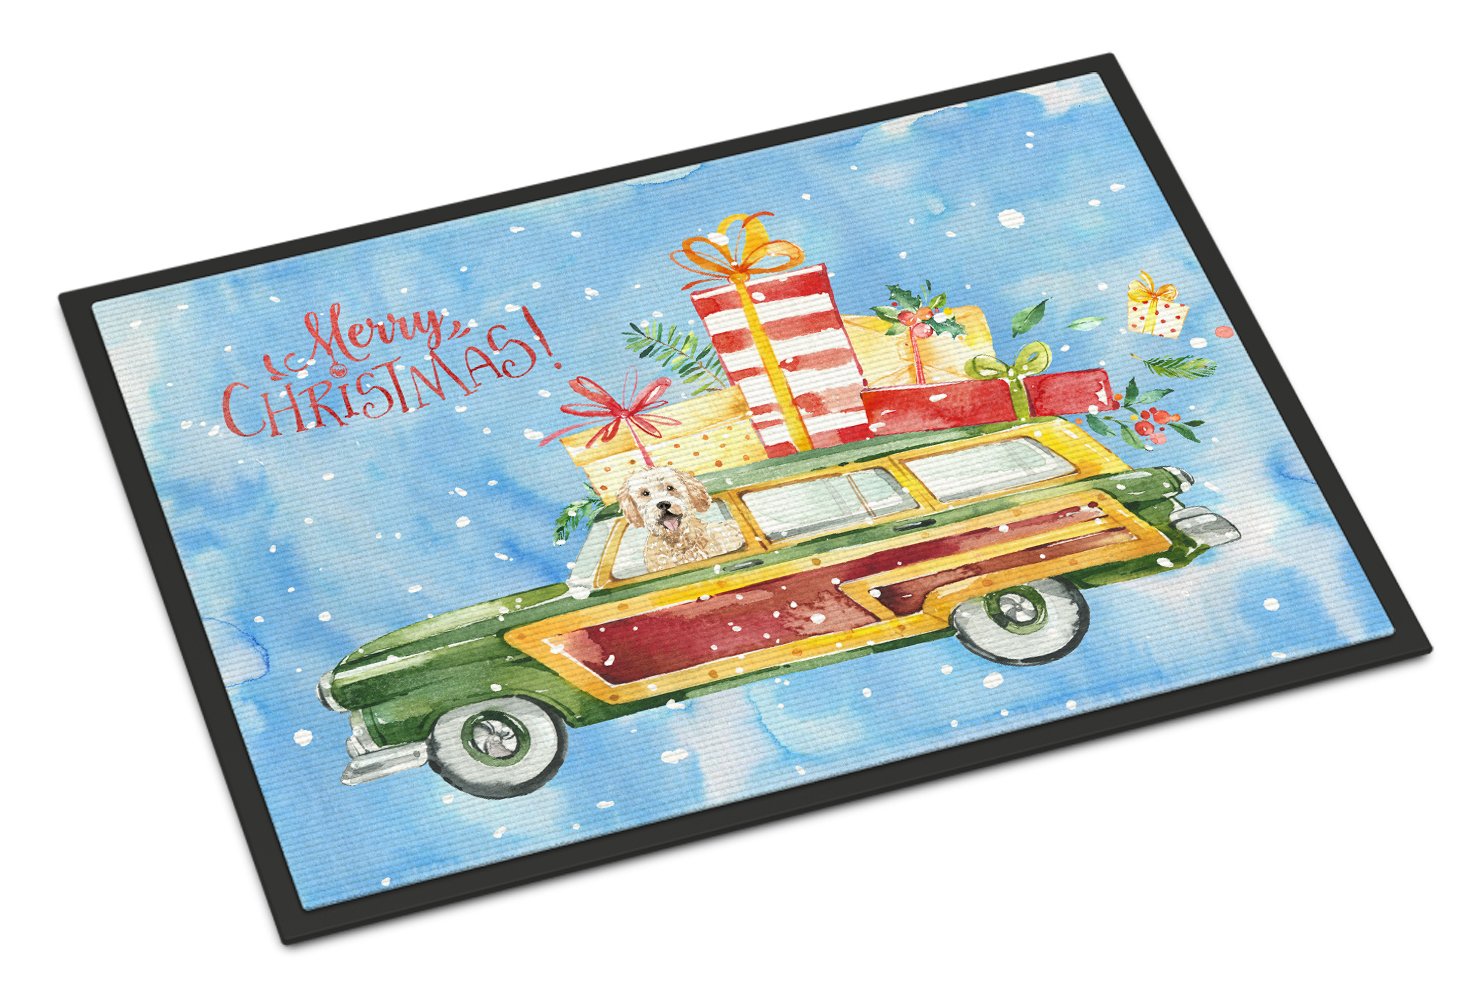 Merry Christmas Goldendoodle Indoor or Outdoor Mat 24x36 CK2406JMAT by Caroline's Treasures